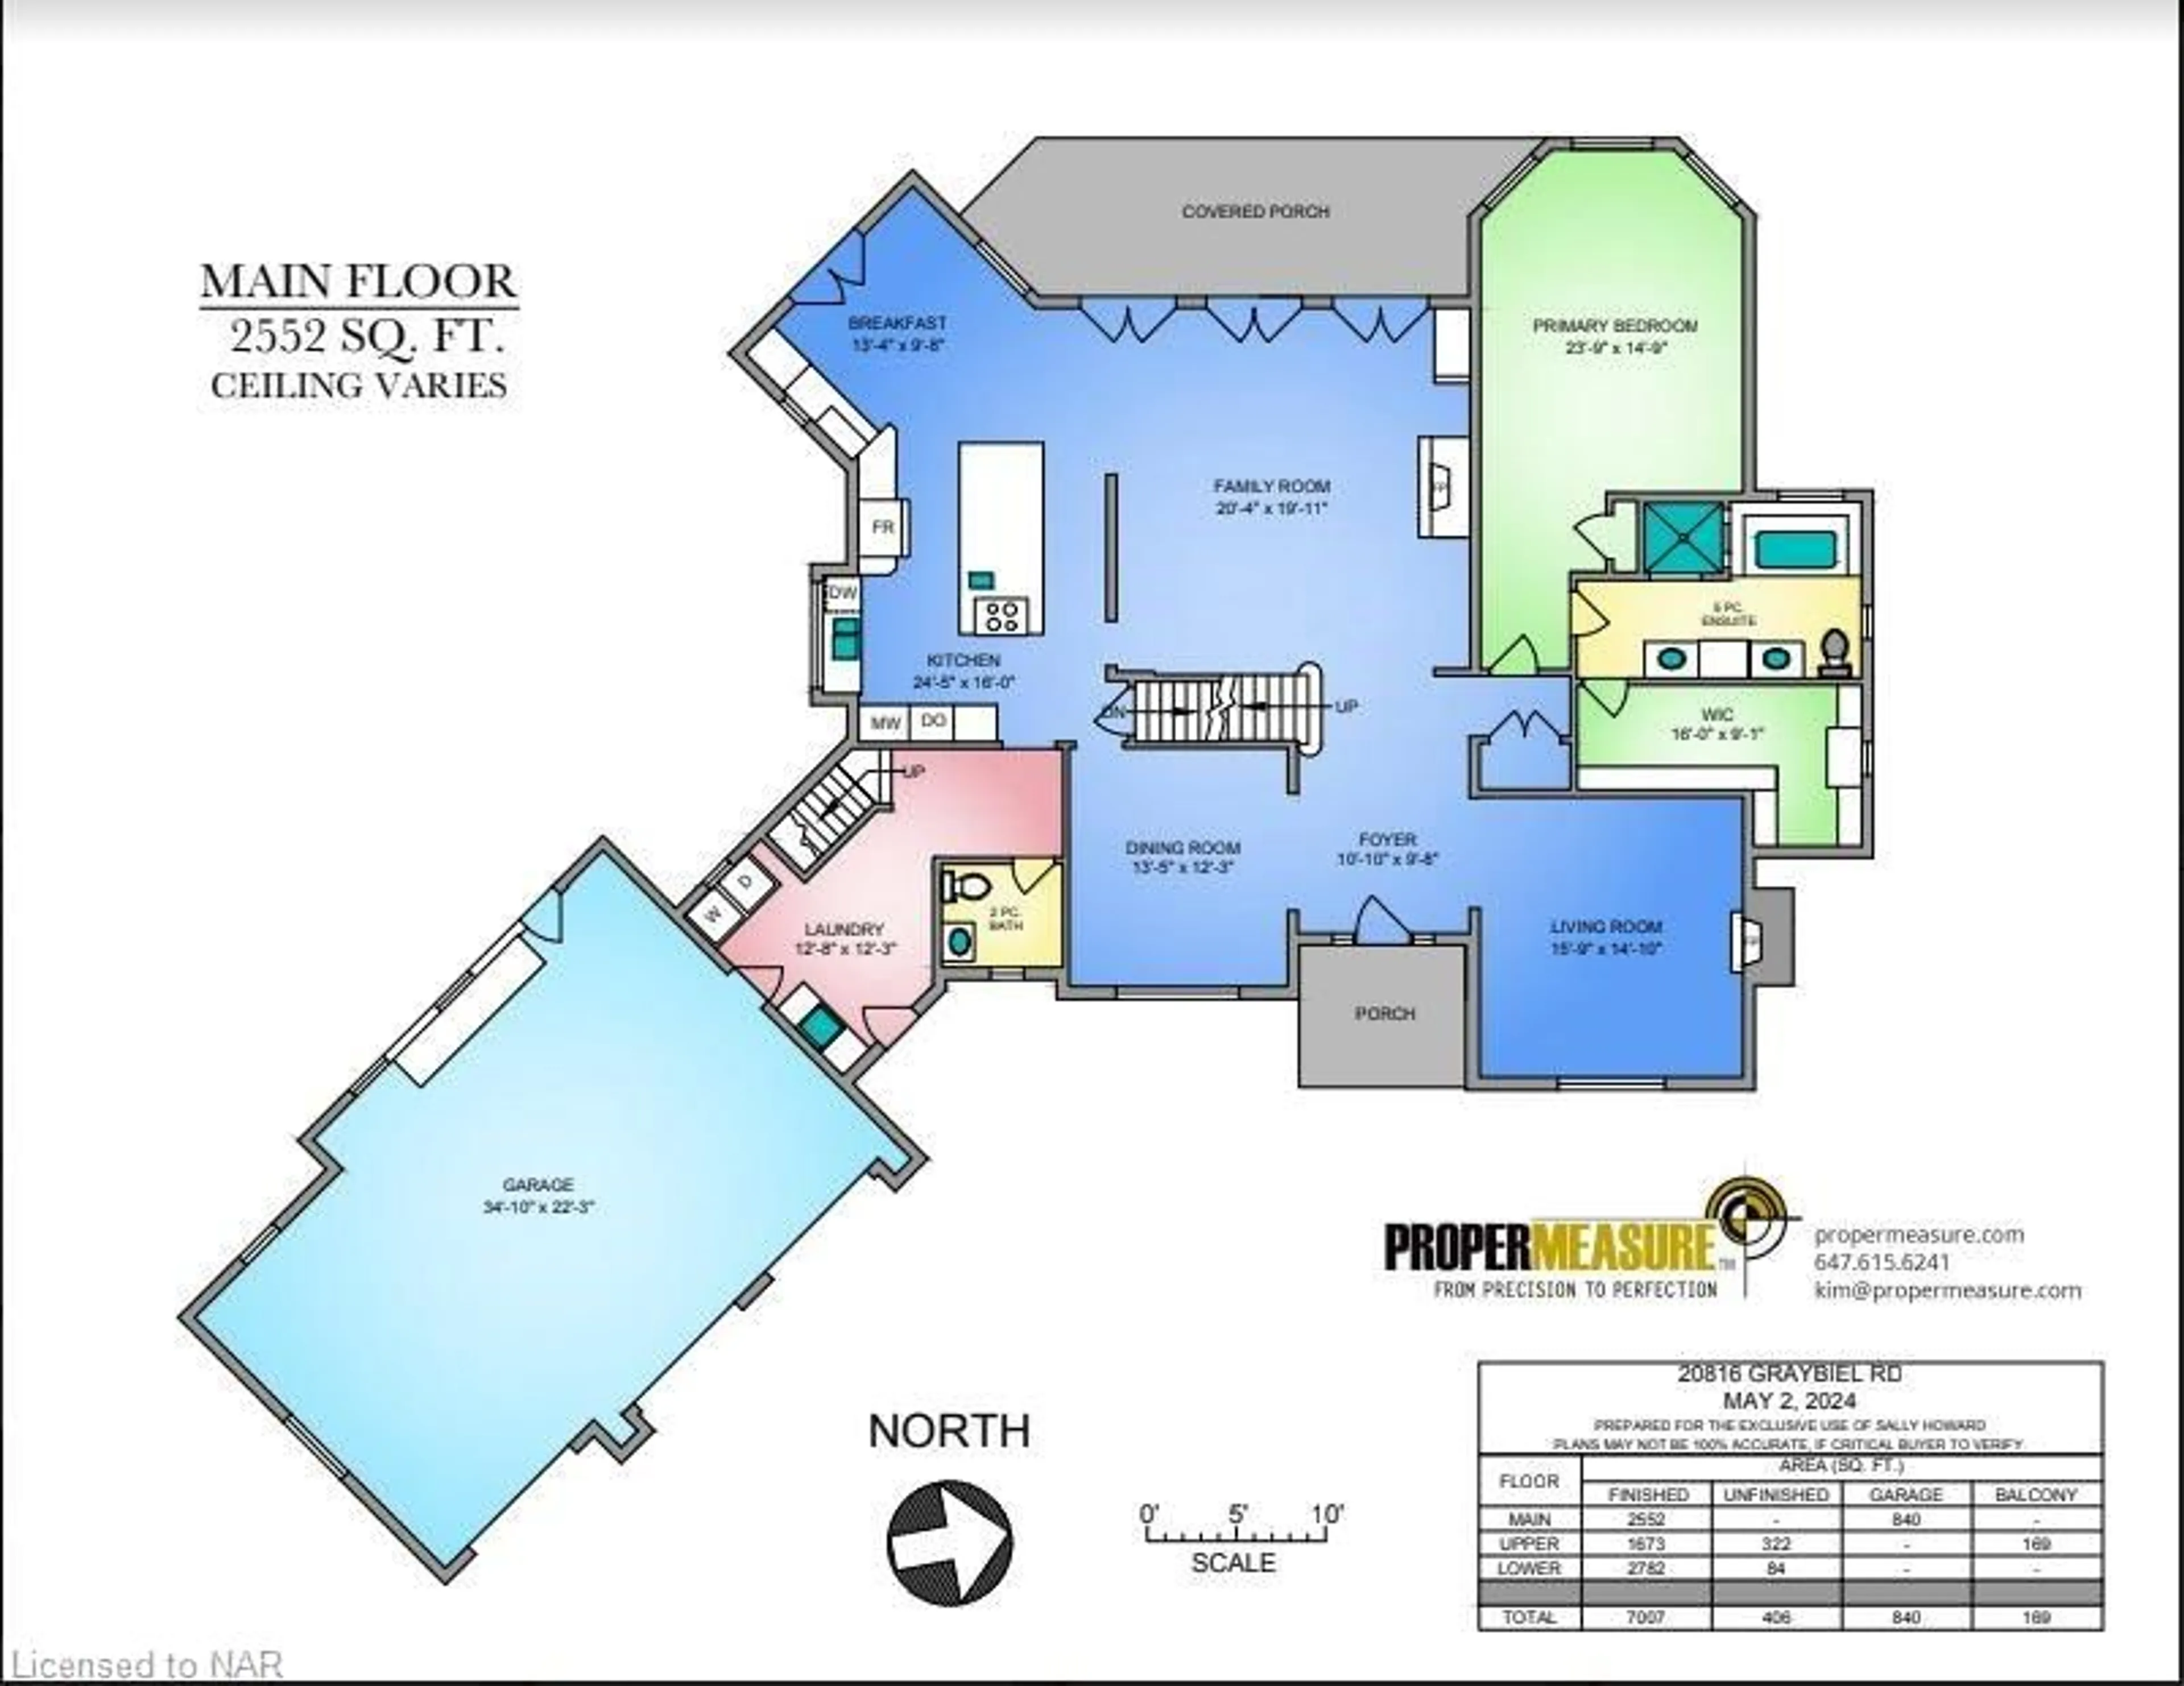 Floor plan for 20816 Graybiel Rd, Wainfleet Ontario L3K 5V4